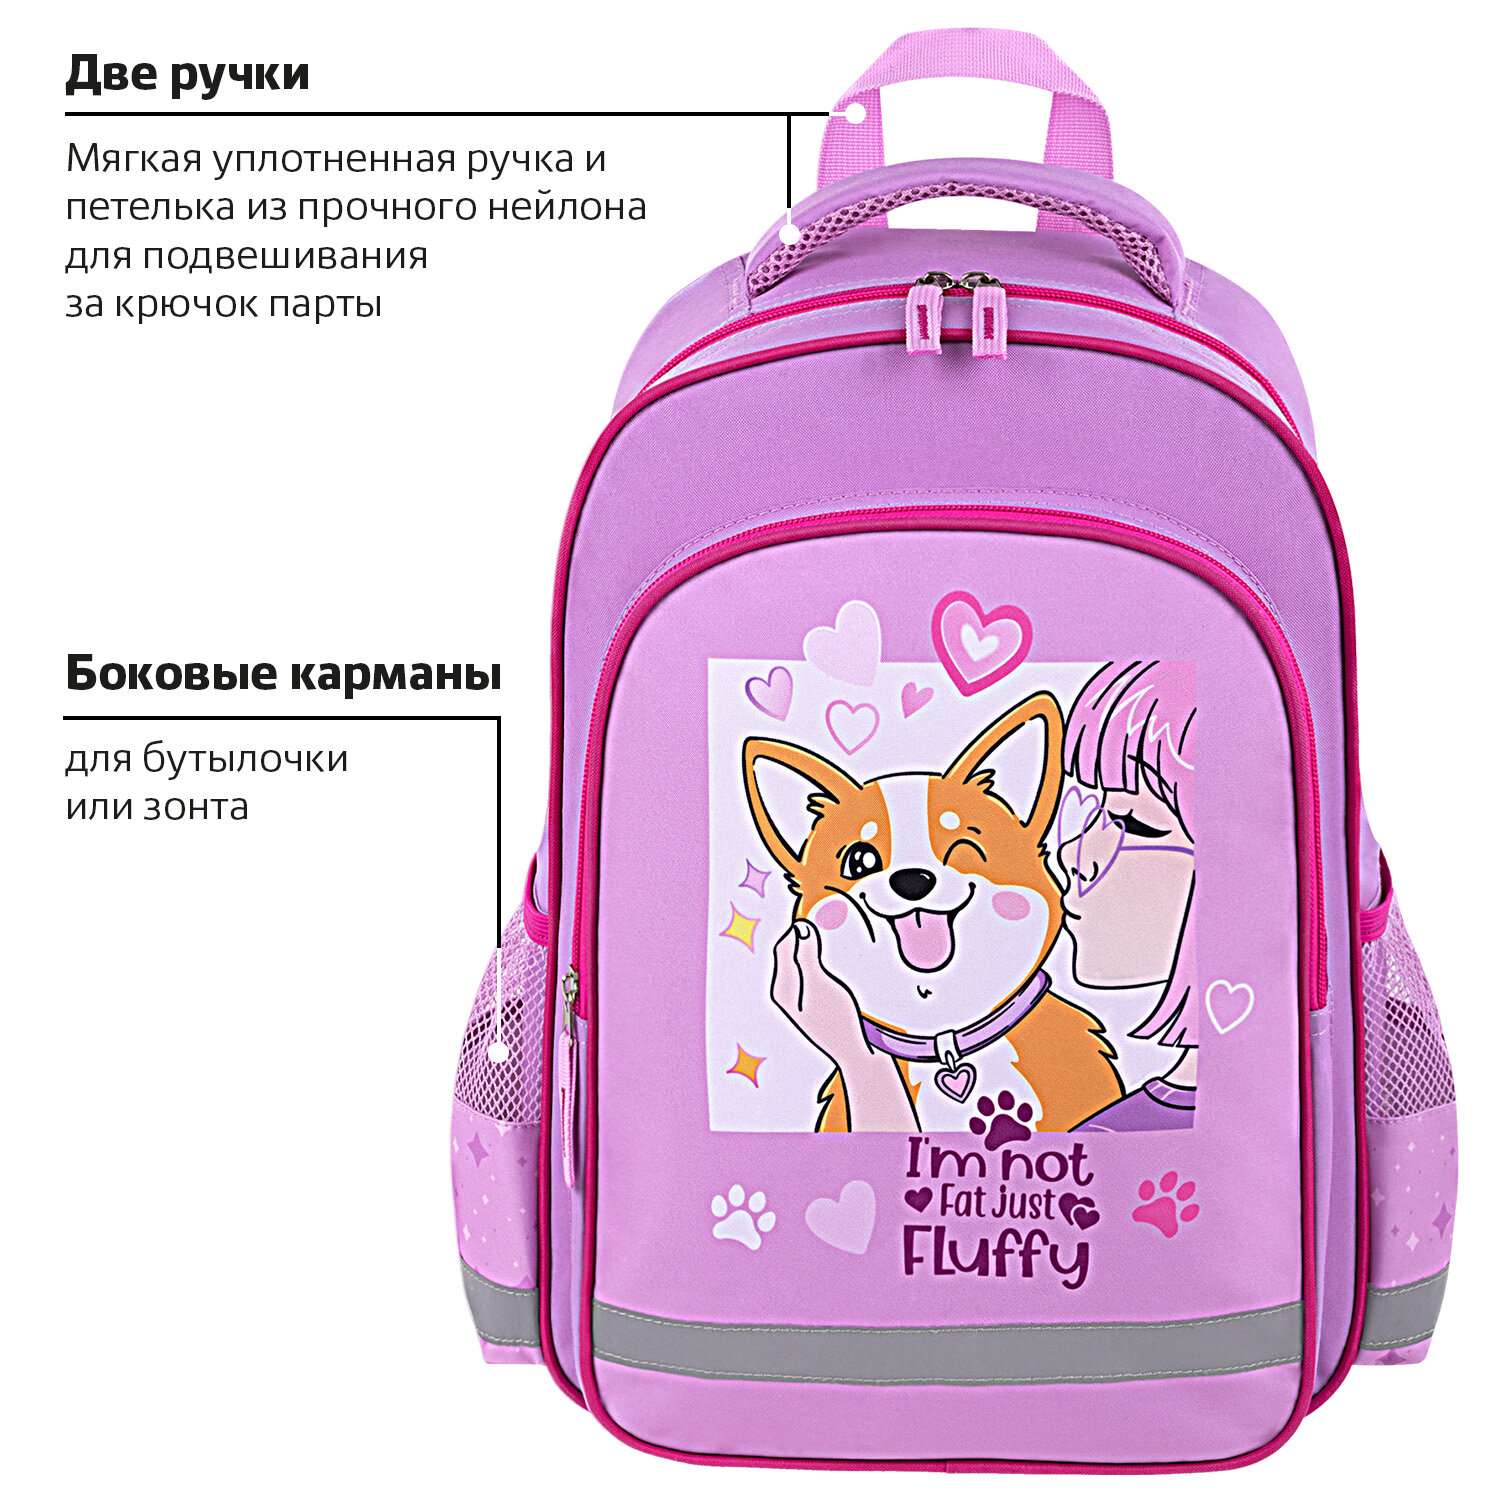 Рюкзак школьный Пифагор для девочки детский в 1 класс - фото 3